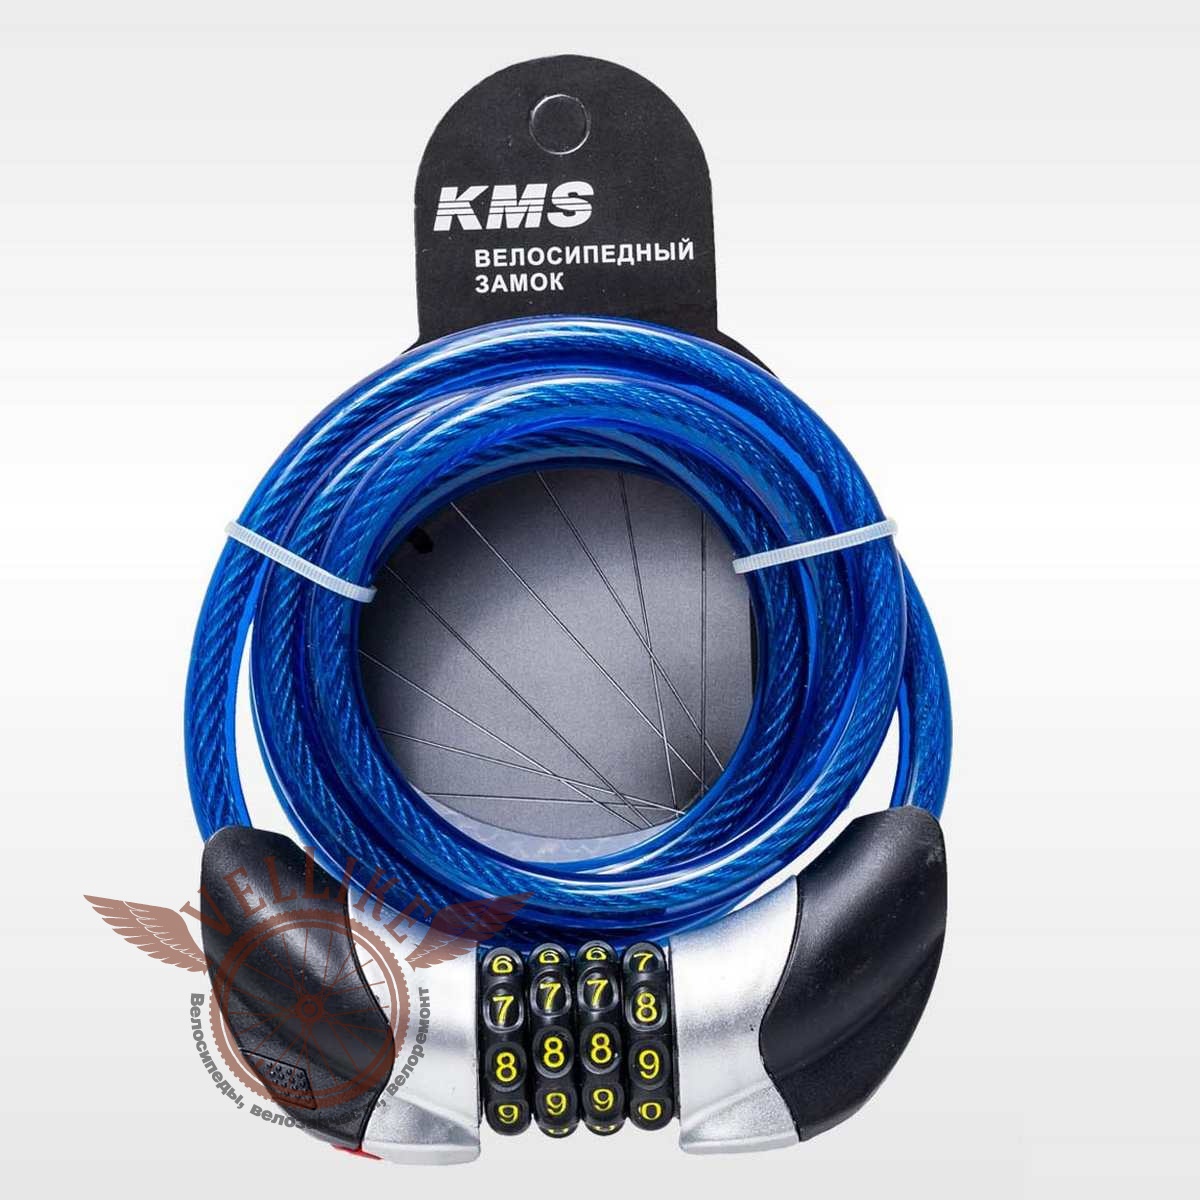 Велозамок "KMS", трос Ø 10*1500, сменный код с подсветкой, инд. упак, модель 2016 года